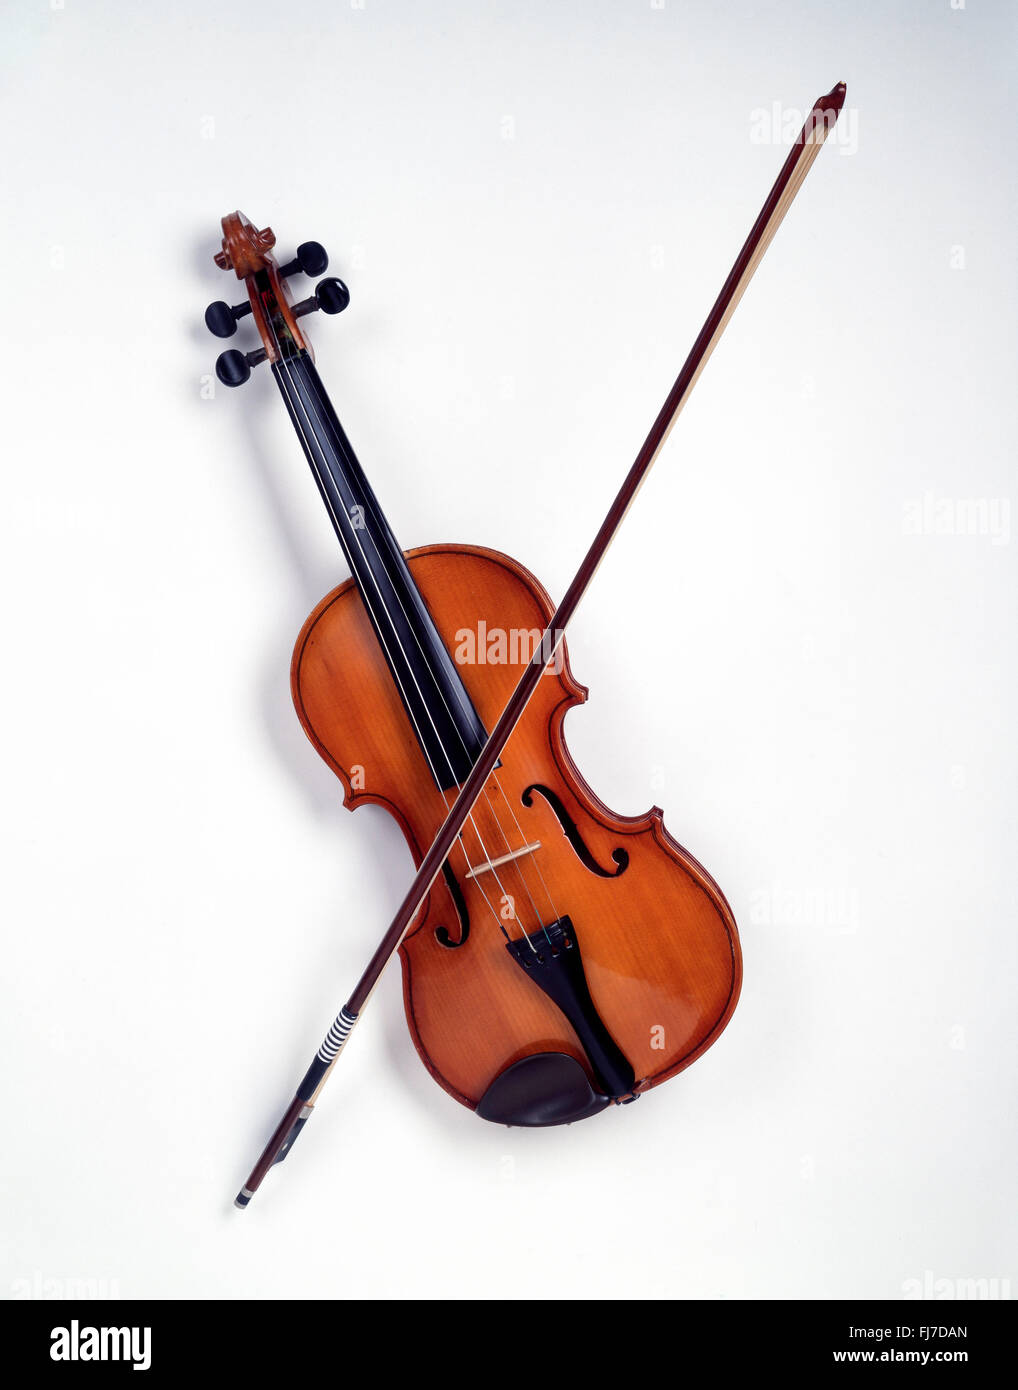 La nature morte de violon avec noeud sur fond blanc, Londres, Angleterre, Royaume-Uni Banque D'Images